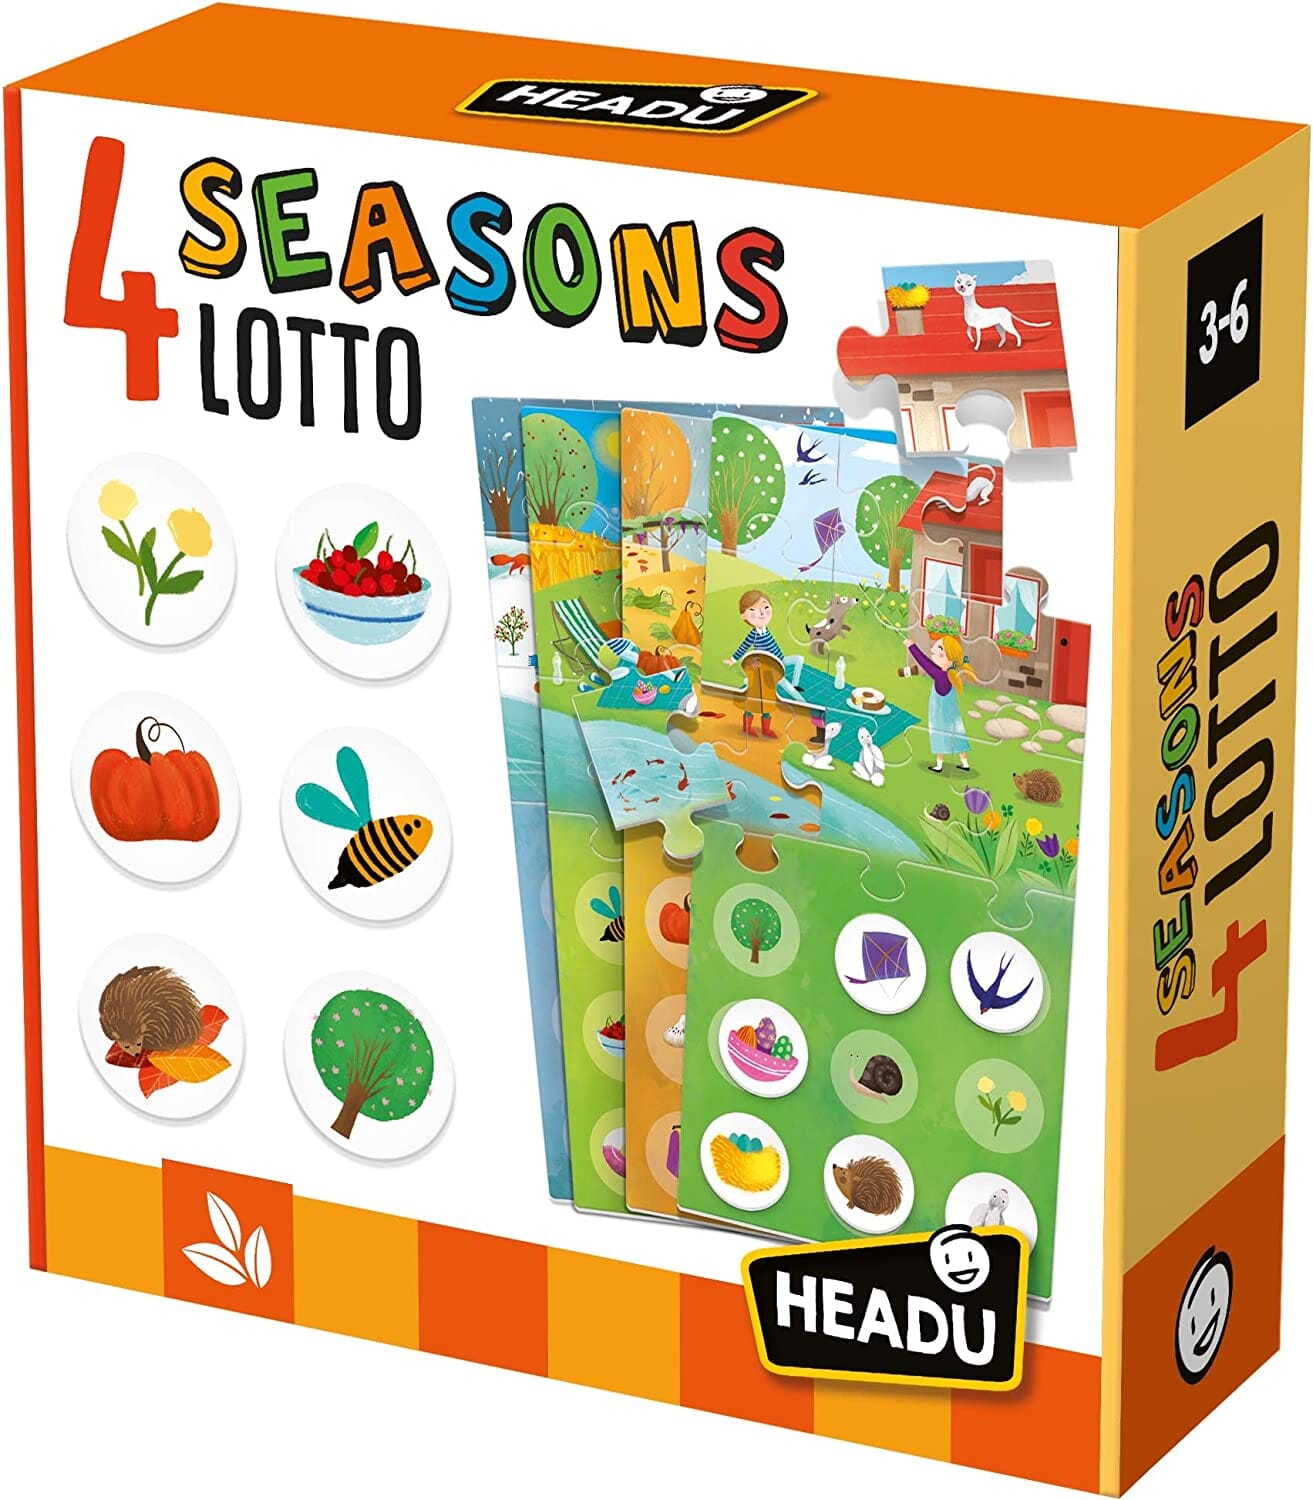 4 Seasons Lotto New Headu toysvaldichiana.it 